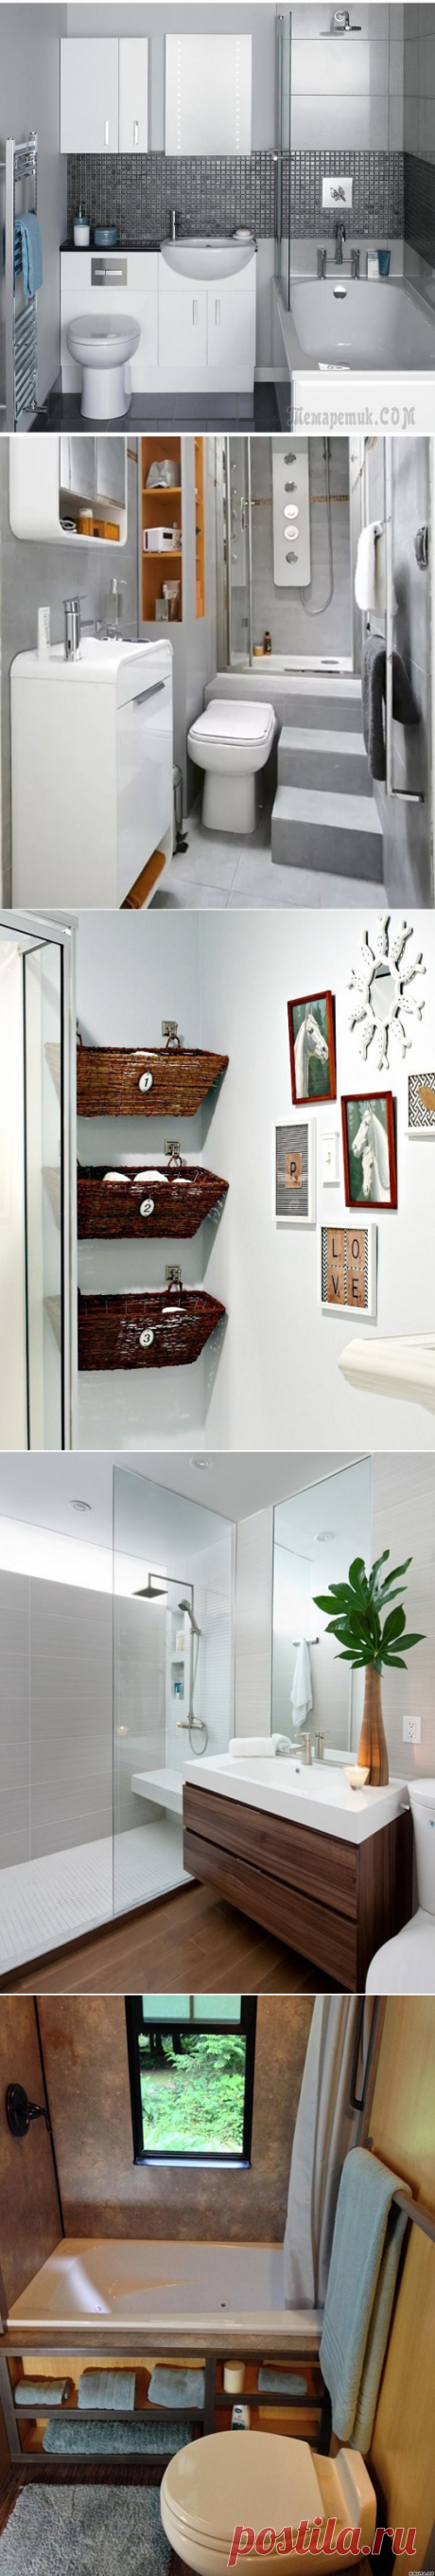 Идеальные интерьеры крохотных ванных комнат: лучшие идеи по оформлению